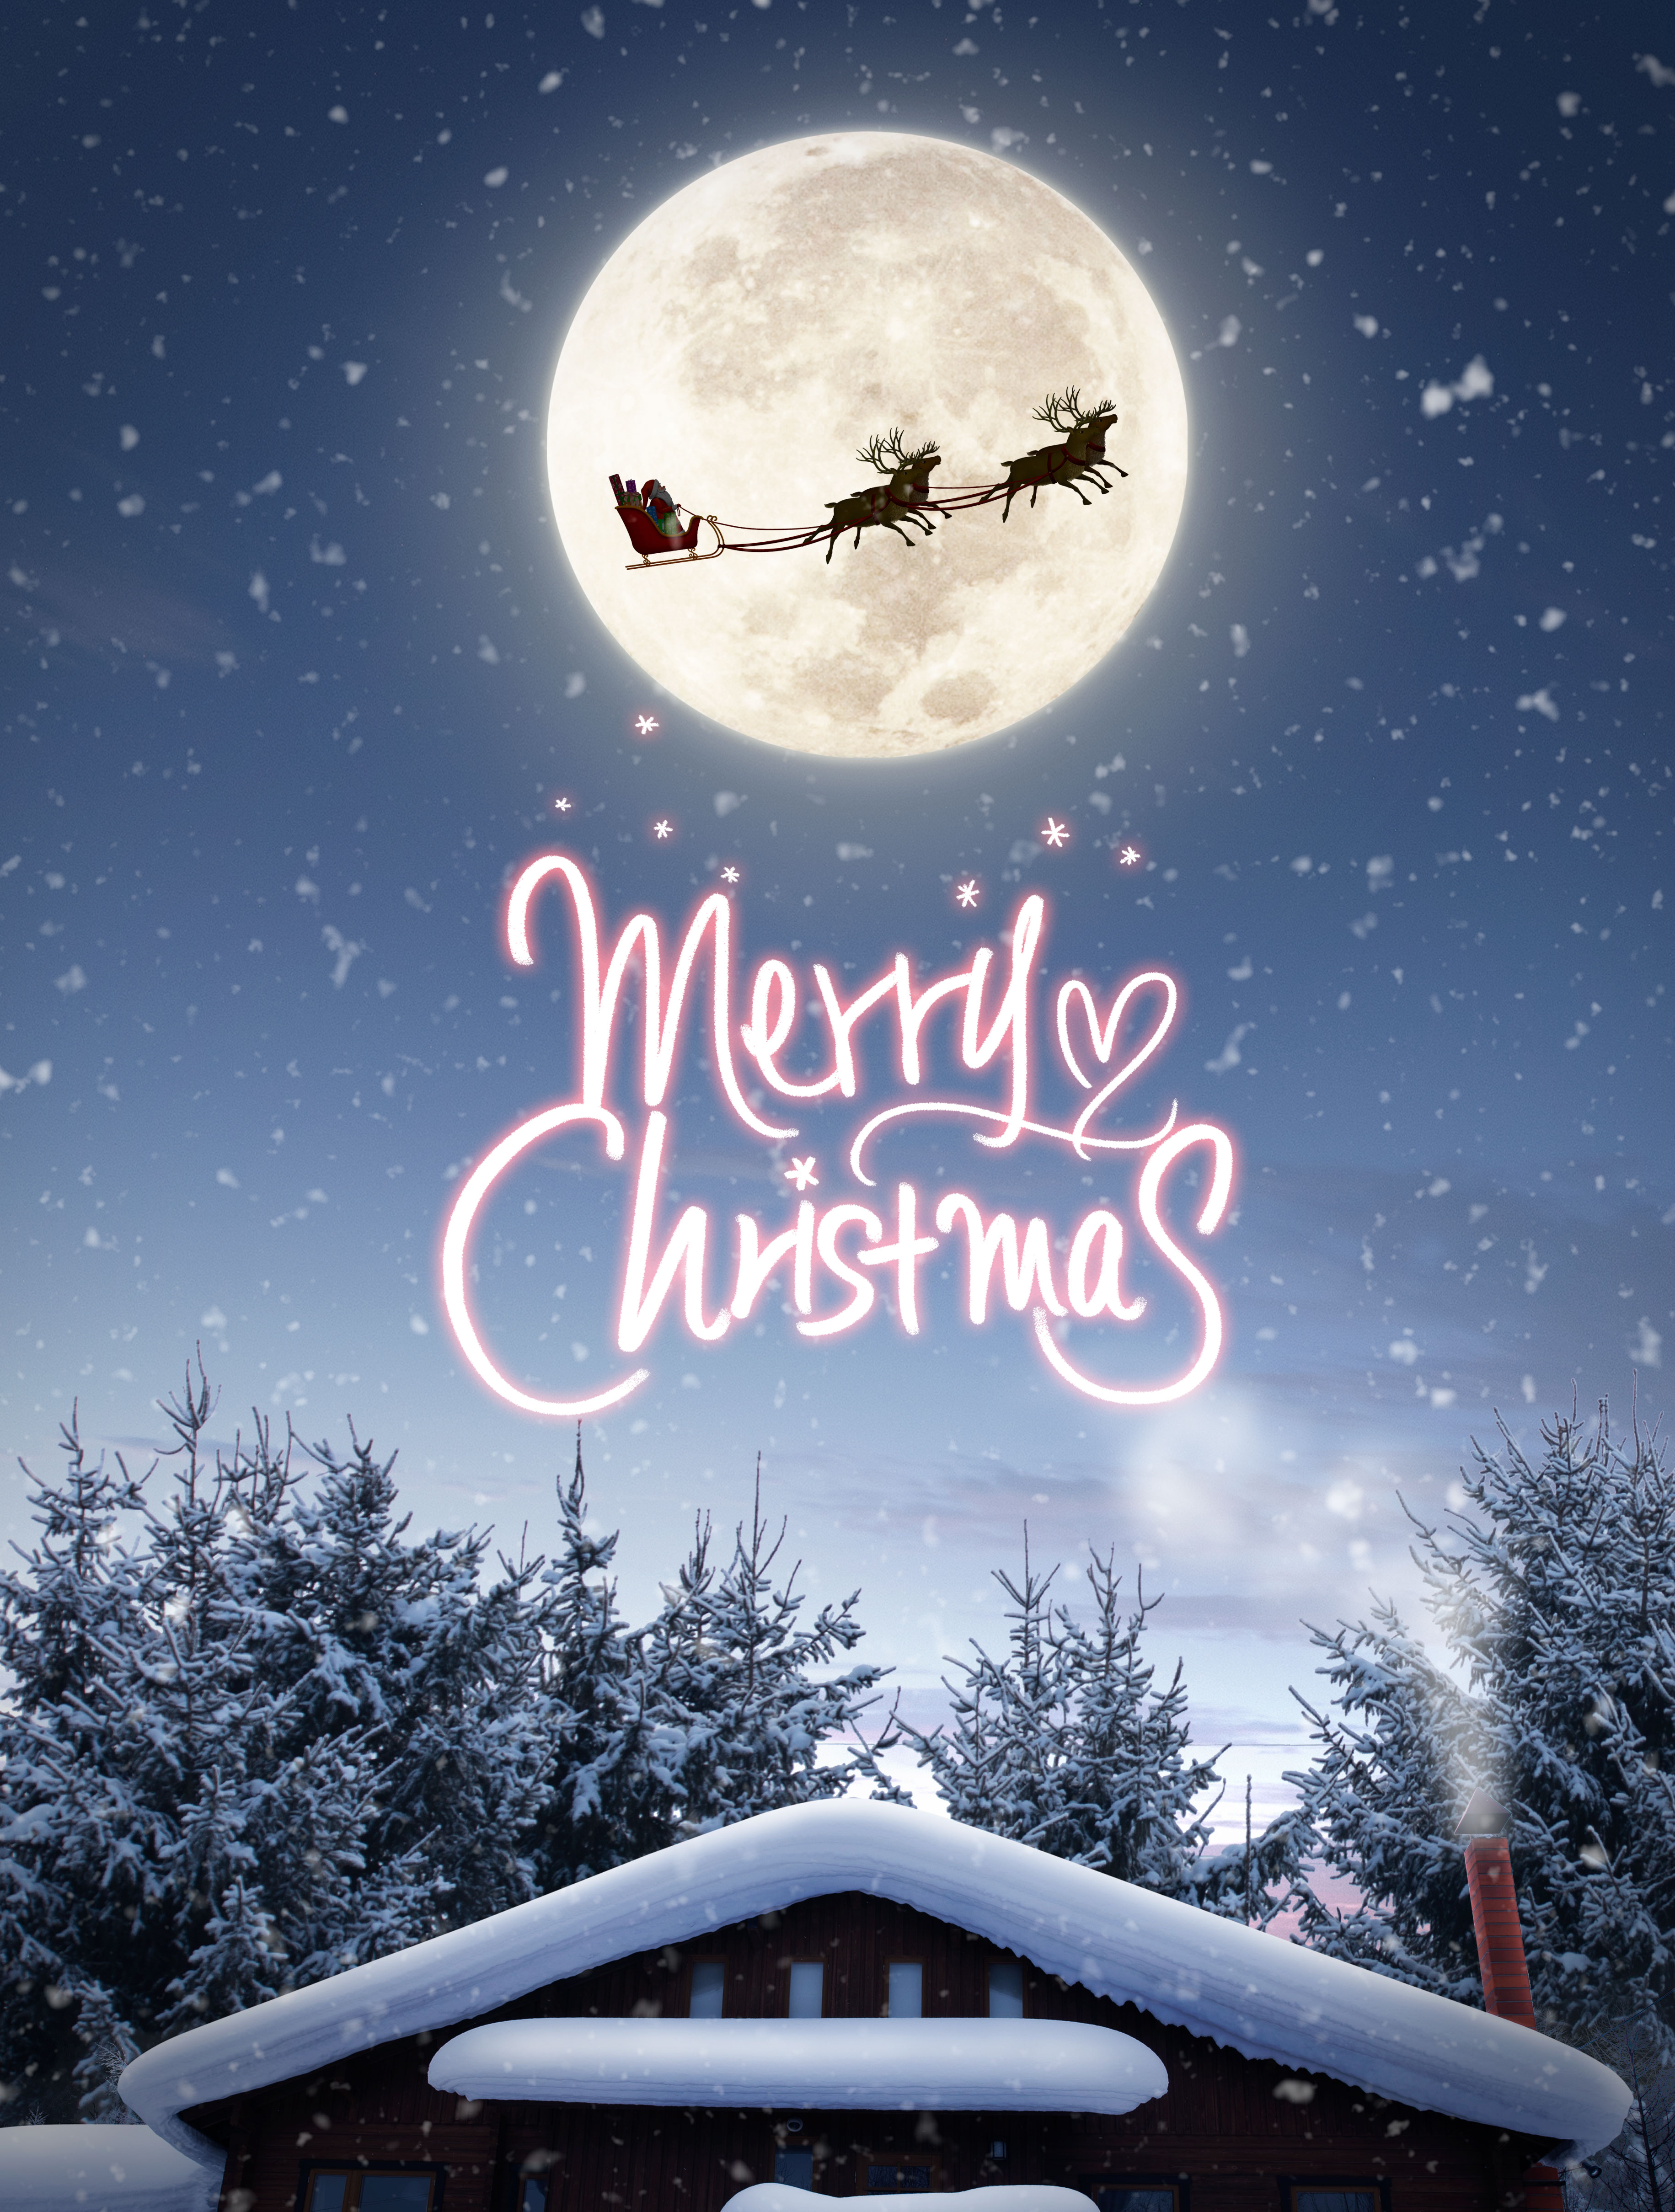 冬季圣诞节日快乐主题海报设计模板插图